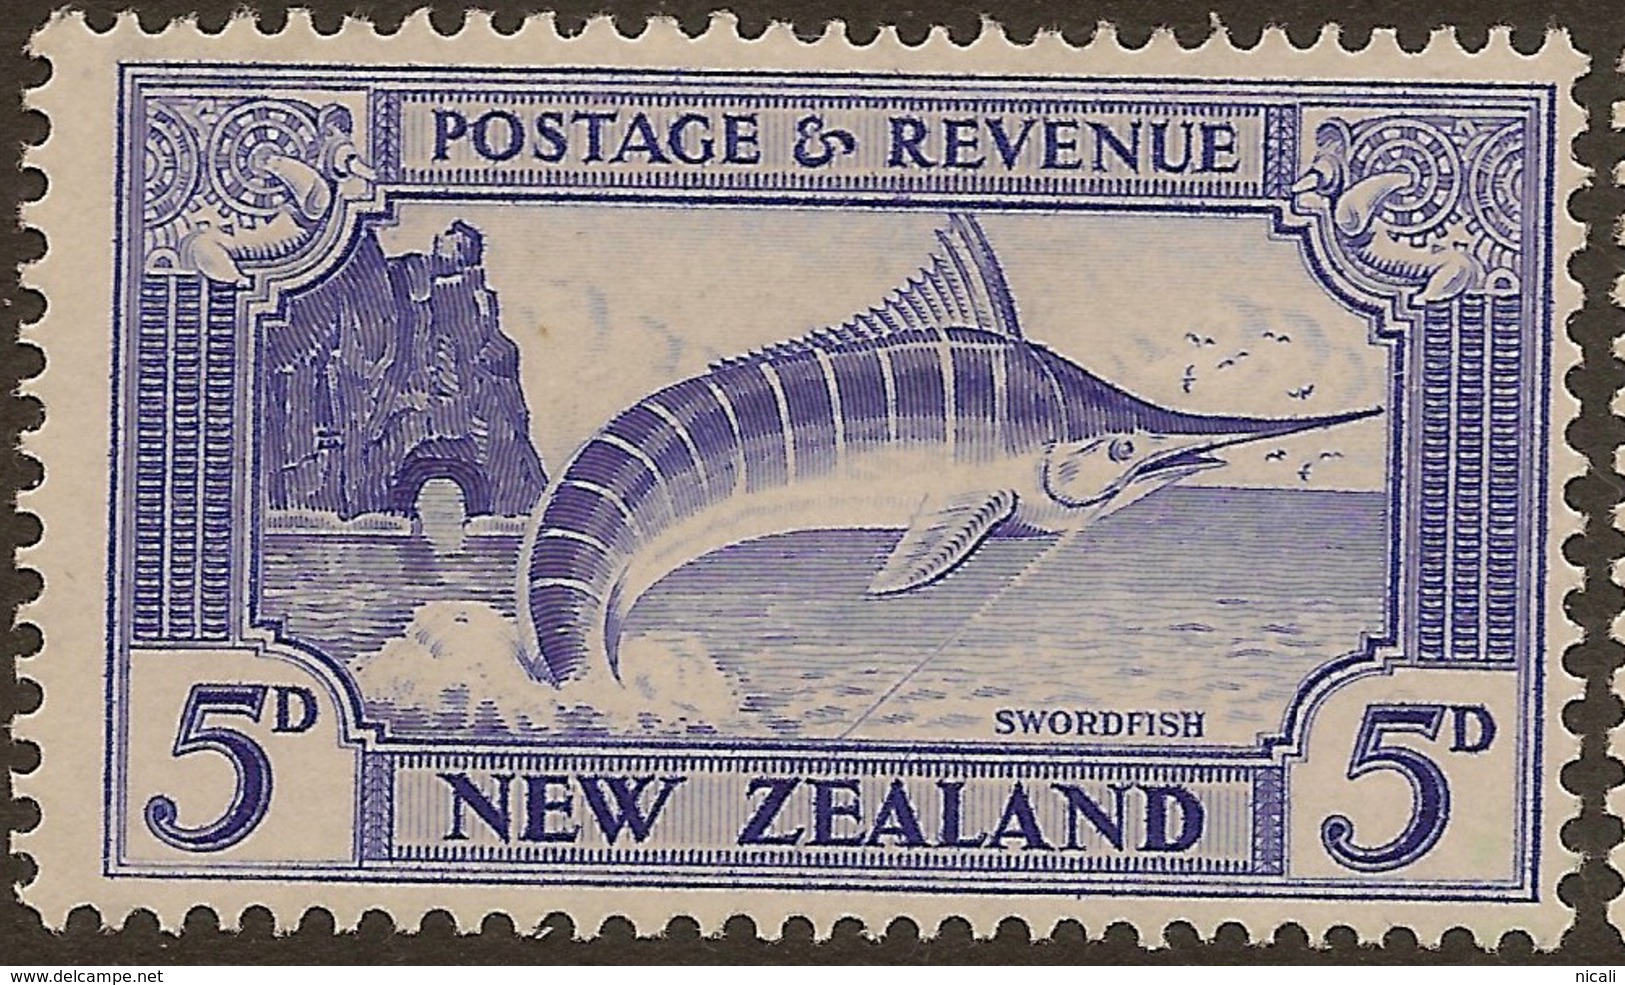 NZ 1935 5d Swordfish SG 563 HM #ABP23 - Ongebruikt